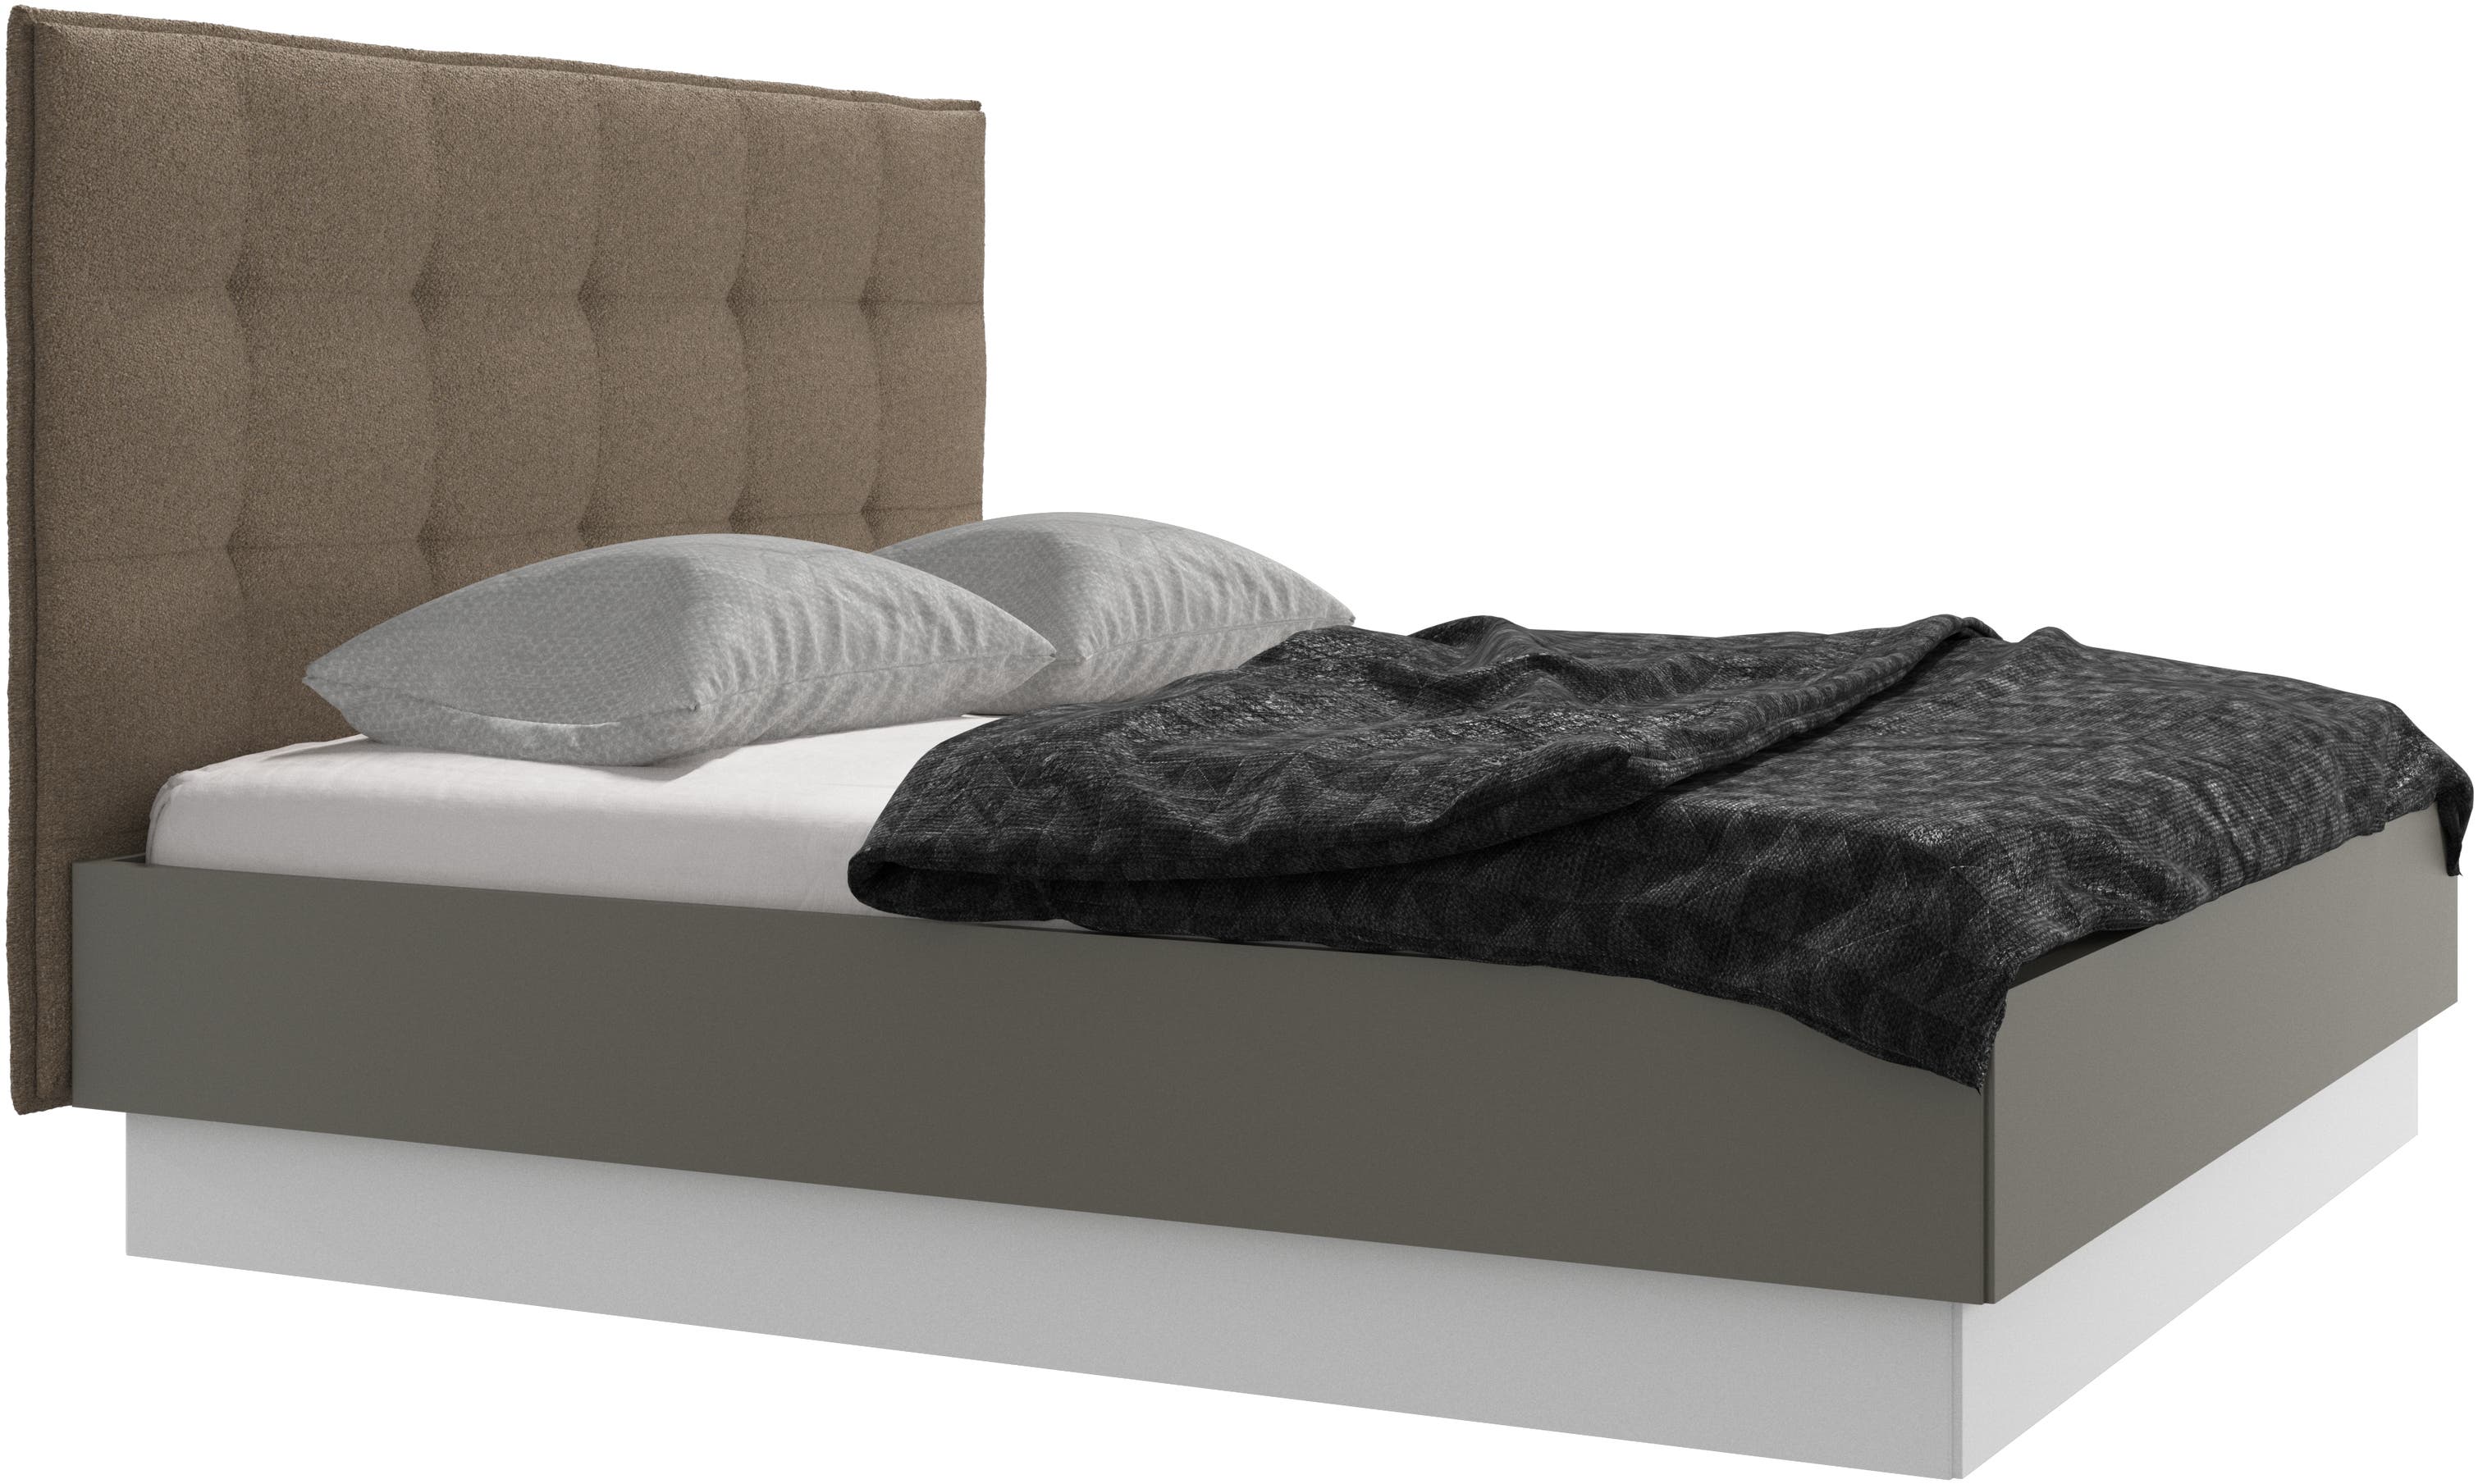 Lugano Bett mit Lattenrost und Staufach unter hochklappbarer Liegefläche, Matratze gegen Aufpreis